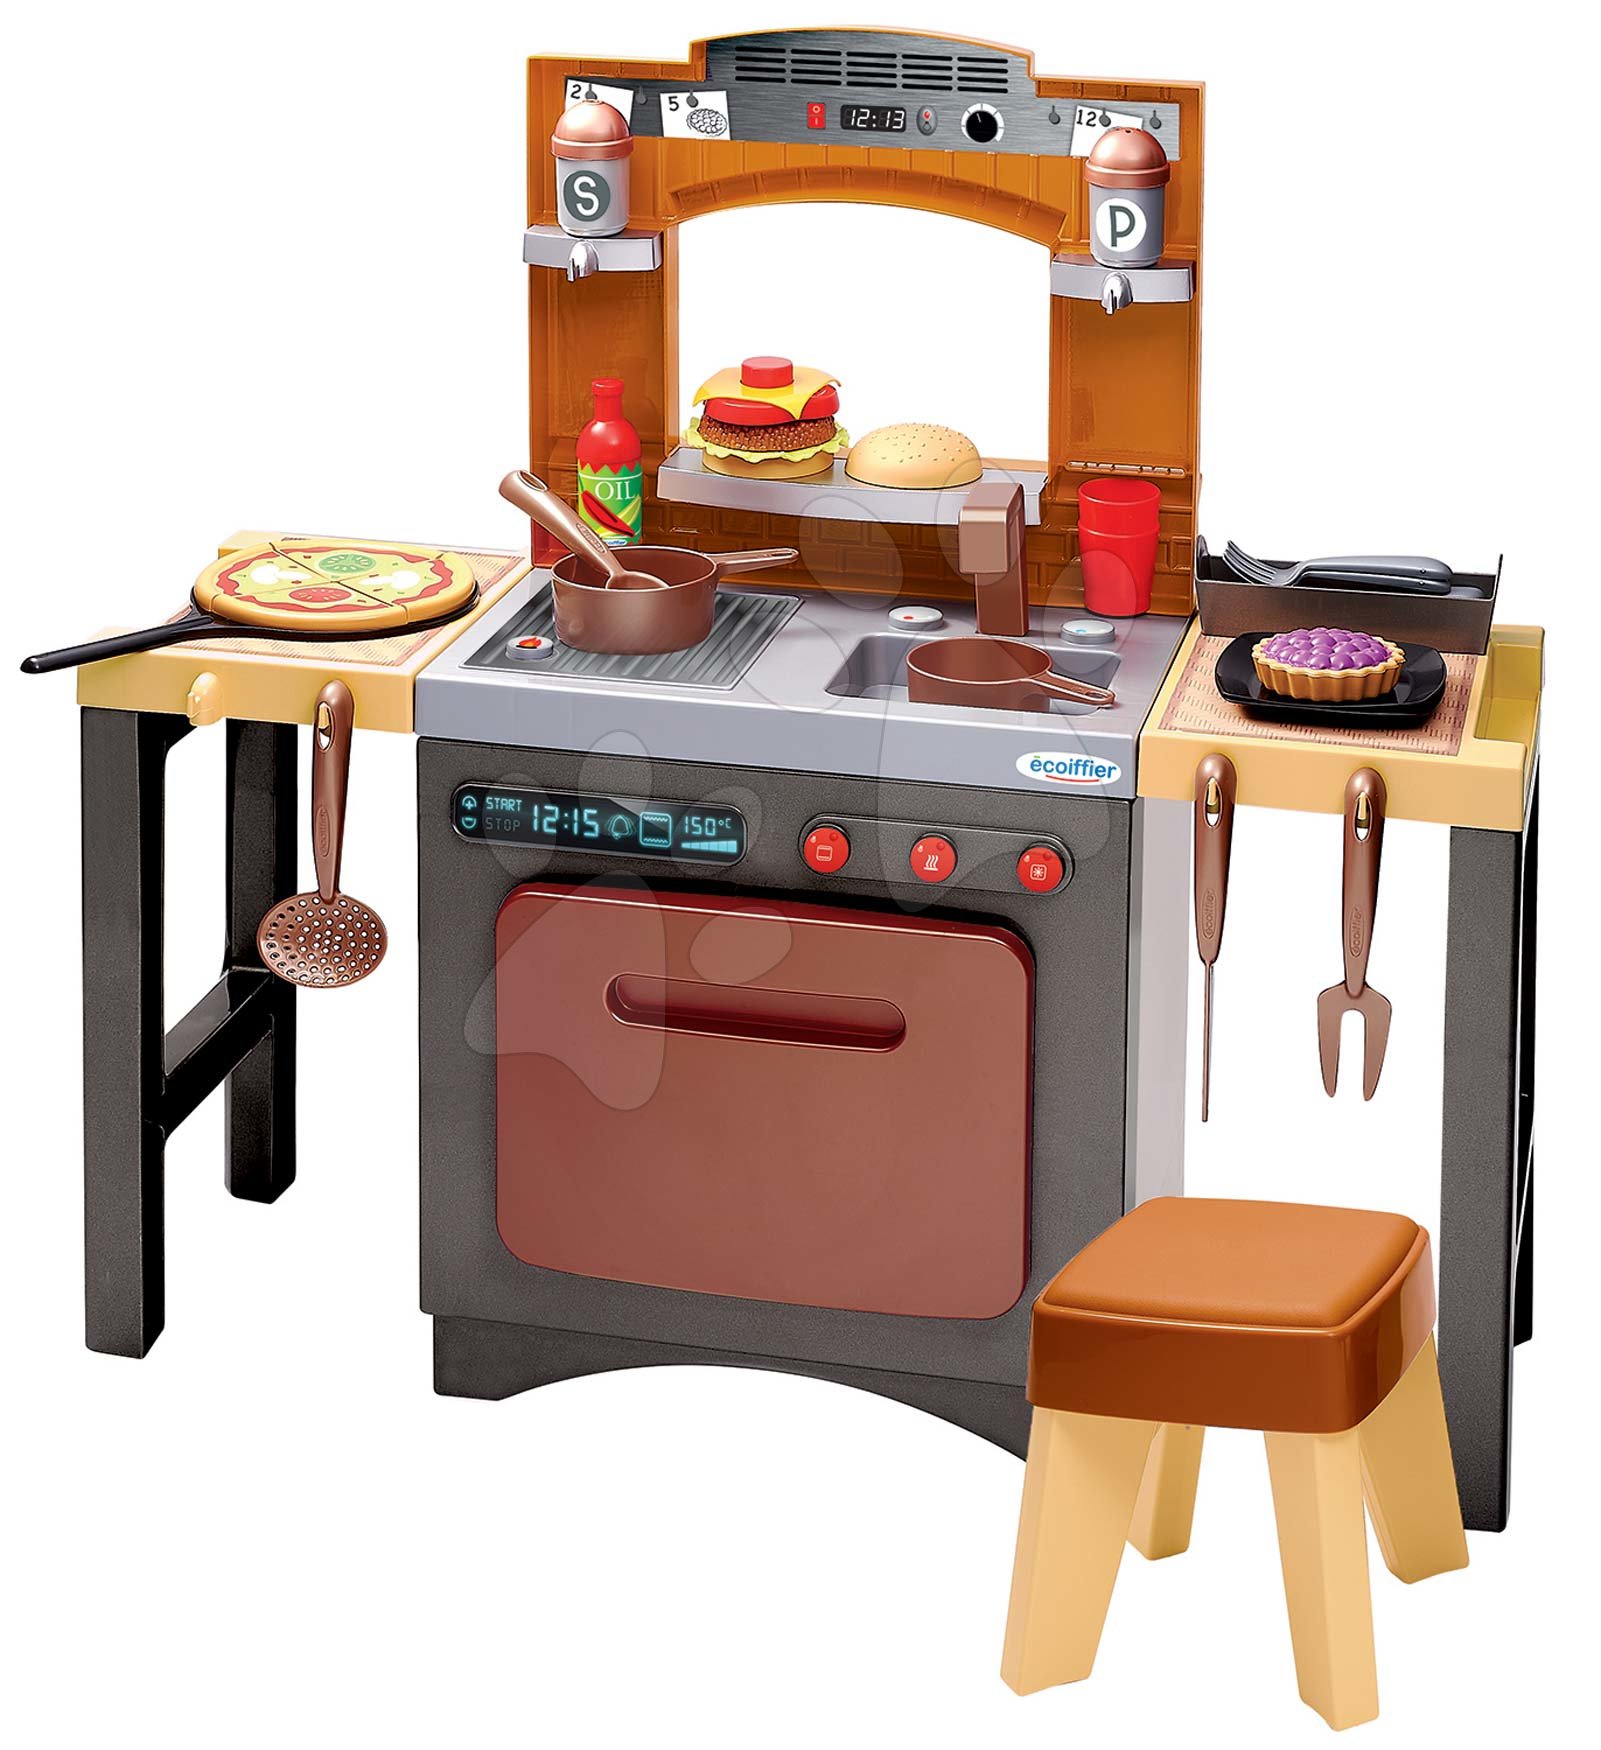 Obyčejné kuchyňky - Kuchyňka s pizzou Pizzeria Écoiffier oboustranná polohovatelná se židlí a 33 doplňky od 18 měsíců